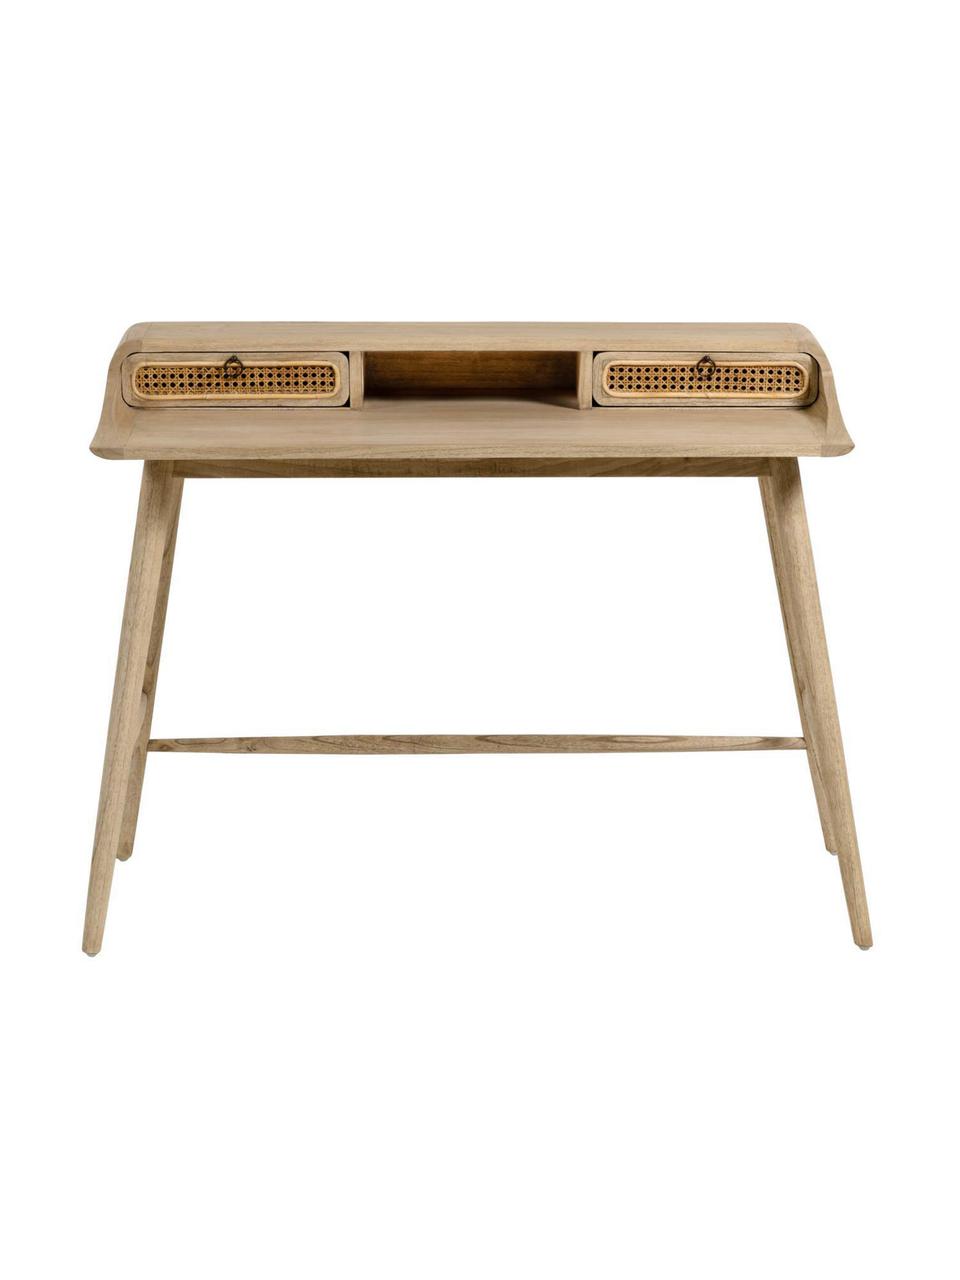 Pracovný stôl z dreva s viedenským výpletom Nalu, Drevo Mindi, Š 110 x H 60 cm